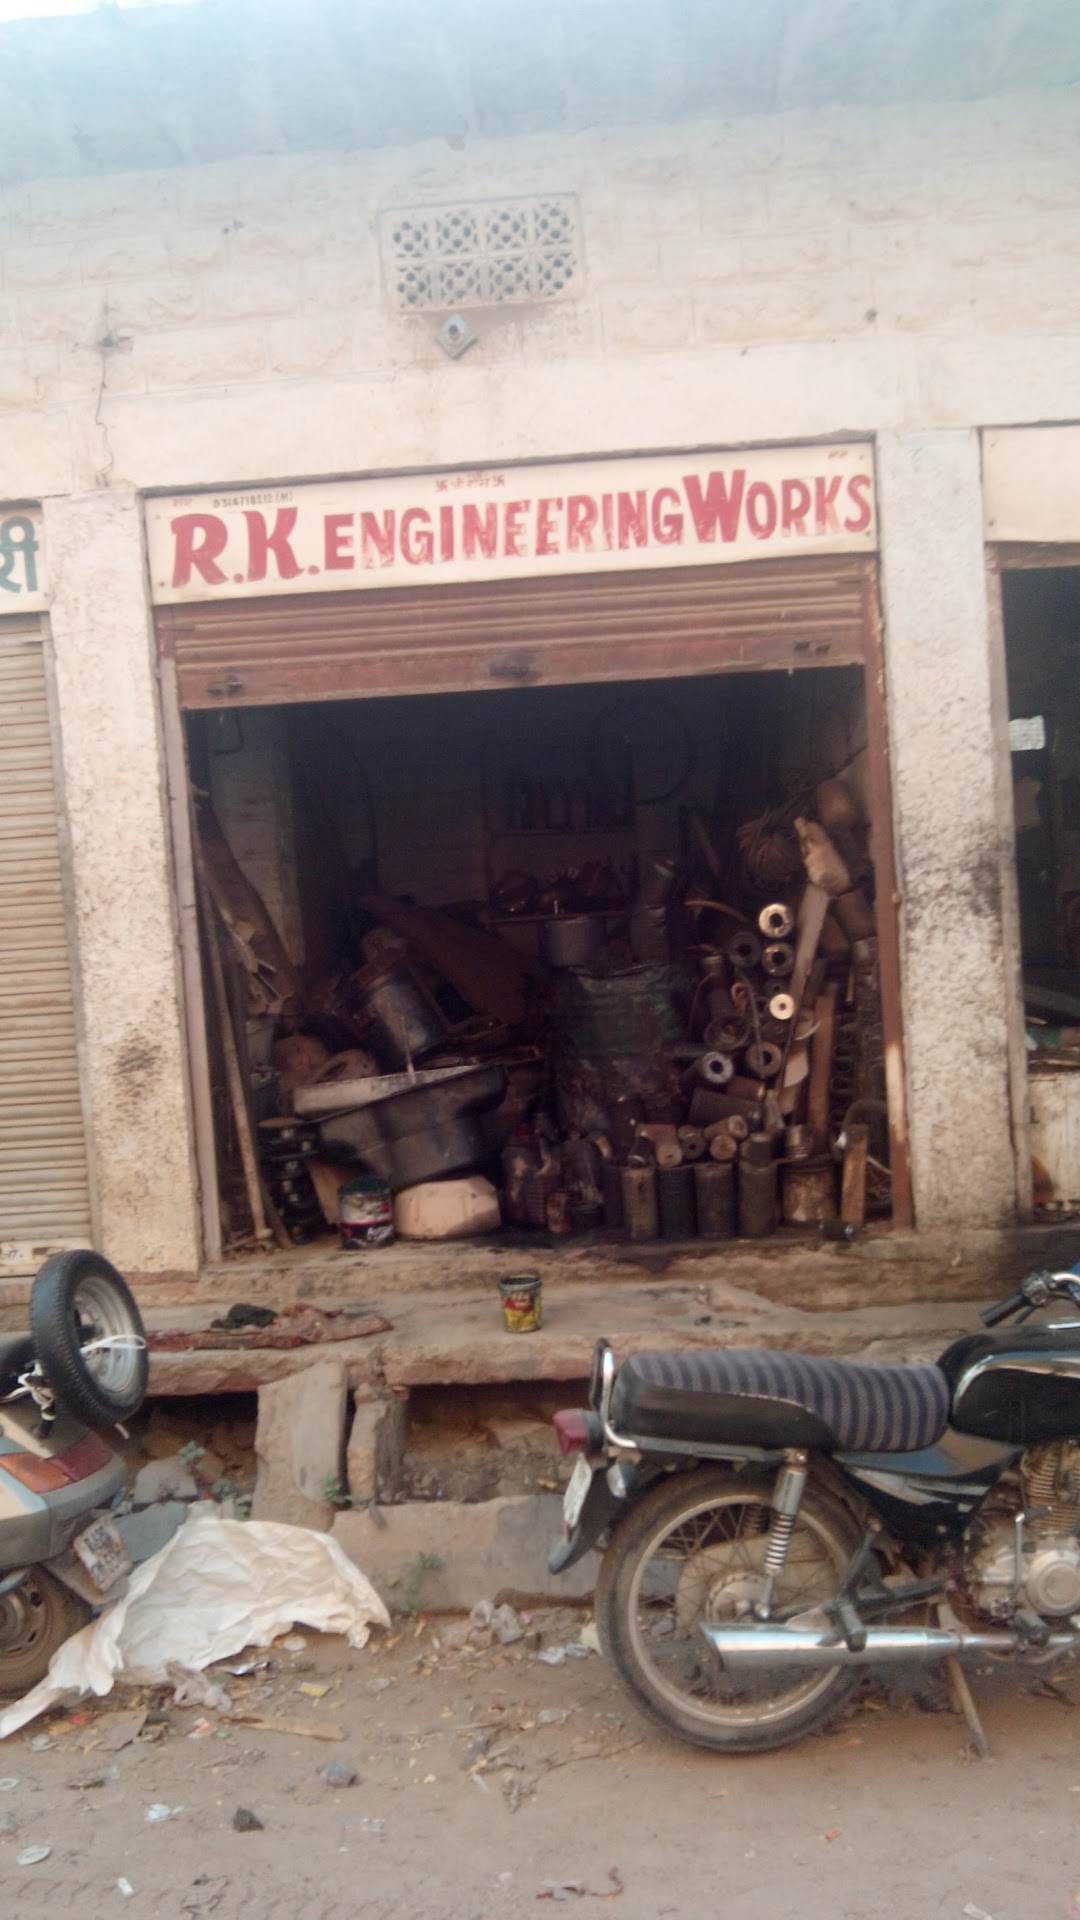 R.K. Engineering Works